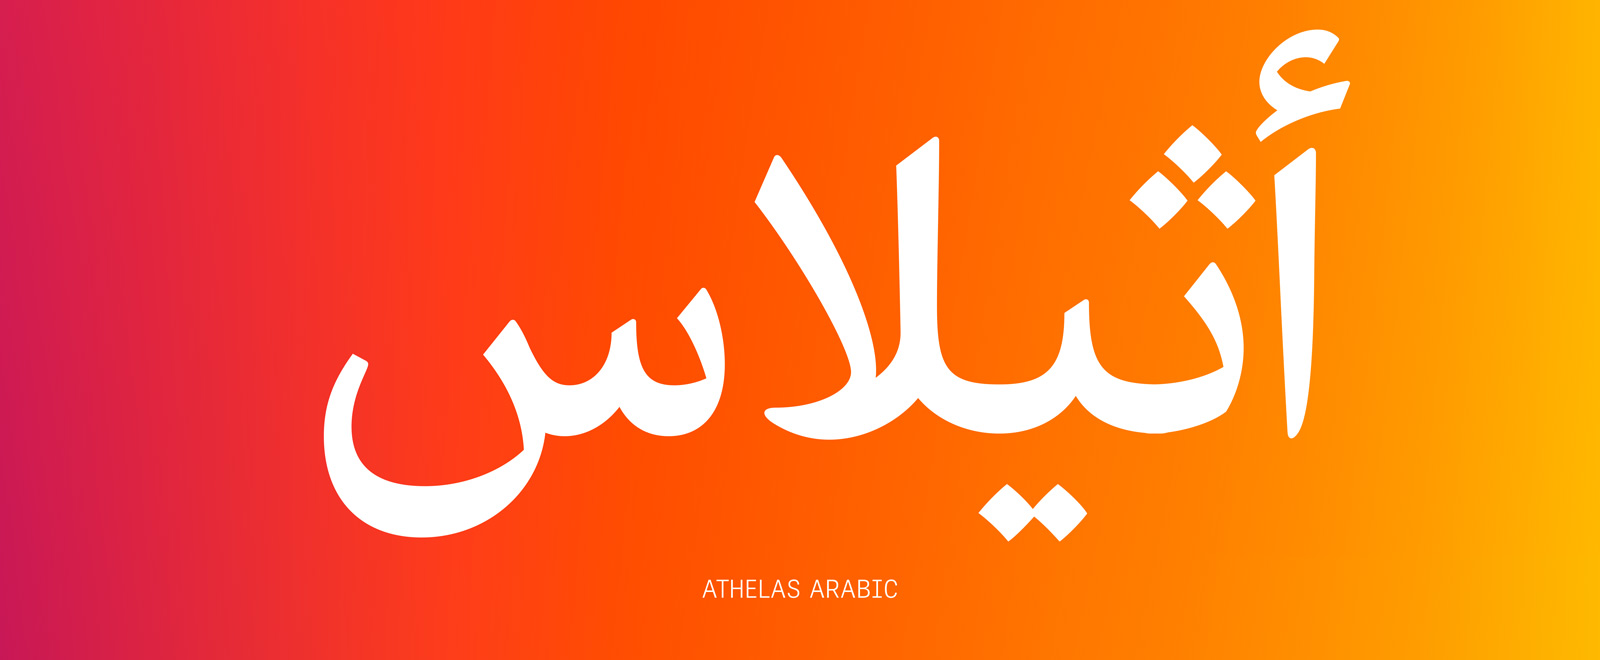 Athelas Arabic, designed by José Scaglione & Sahar Afshar